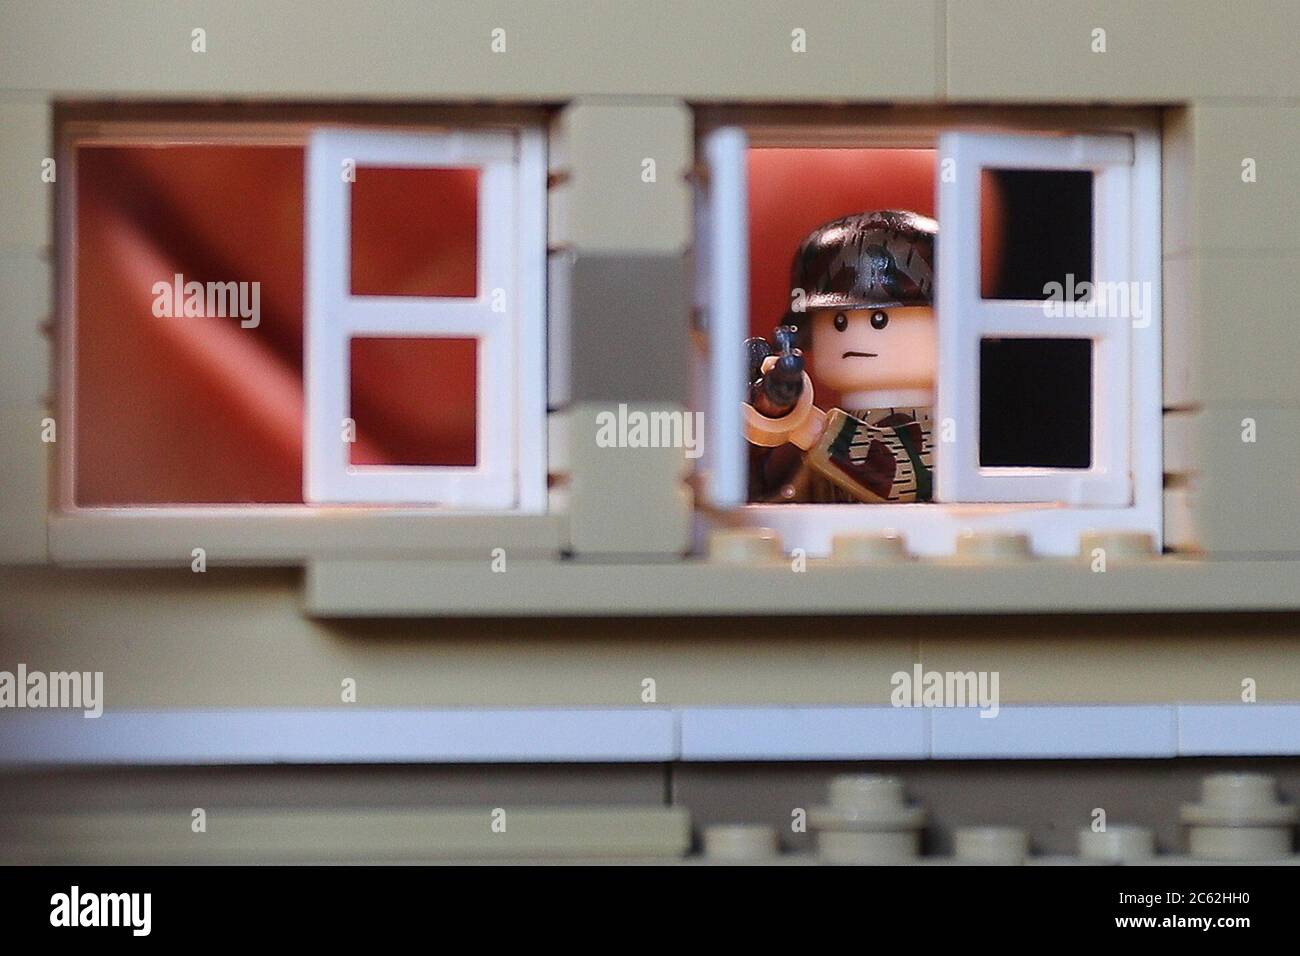 Wladimir, Russland. Juli 2020. Eine Lego-Minifigur, die einen Nazi-Scharfschützen  am Set eines LEGO-Stop-Motion-Animationsfilms mit dem Titel "Battle for  Berlin" im Studio des Brickfilmherstellers und Bloggers Konstantin  Staroverov zeigt. Konstantin ...